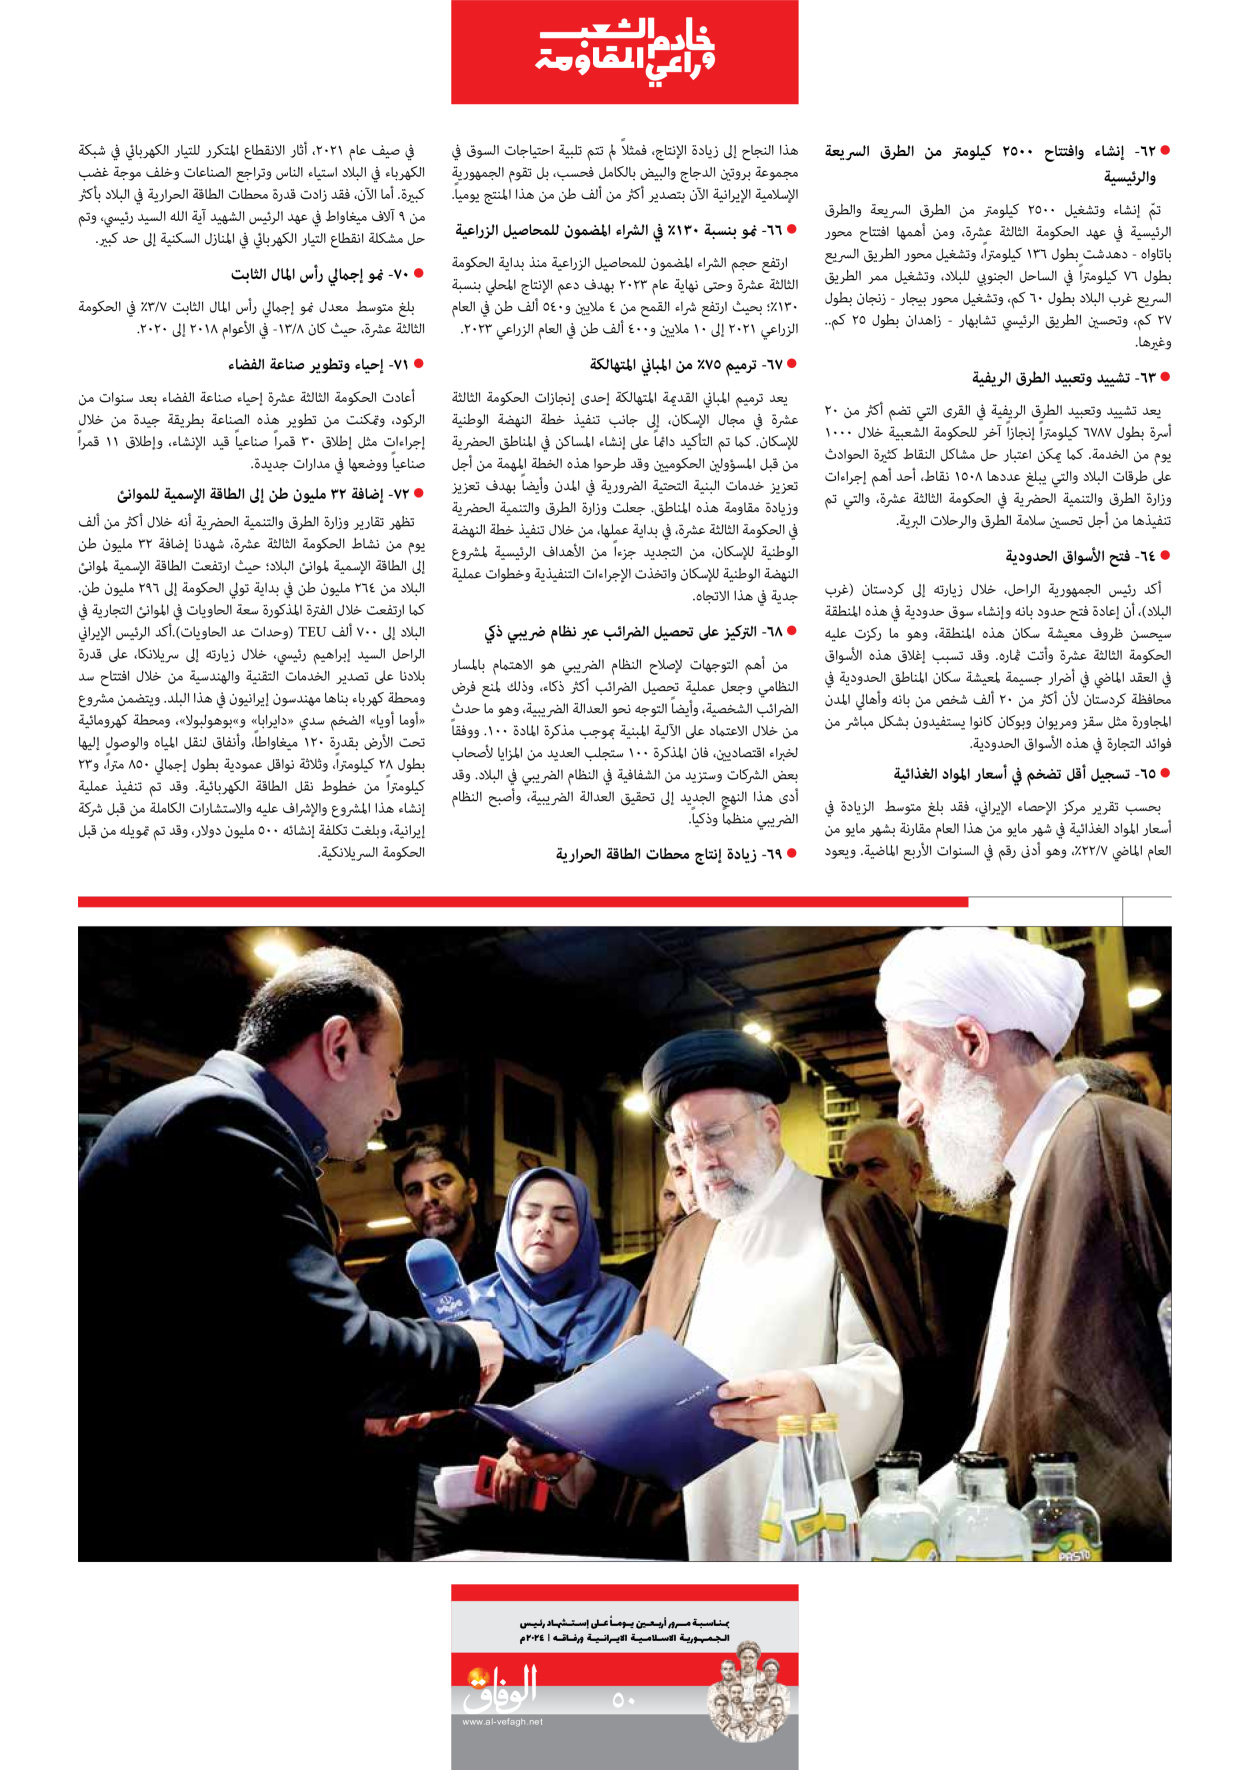 صحیفة ایران الدولیة الوفاق - ملحق ویژه نامه چهلم شهید رییسی - ٢٩ يونيو ٢٠٢٤ - الصفحة ٥۰